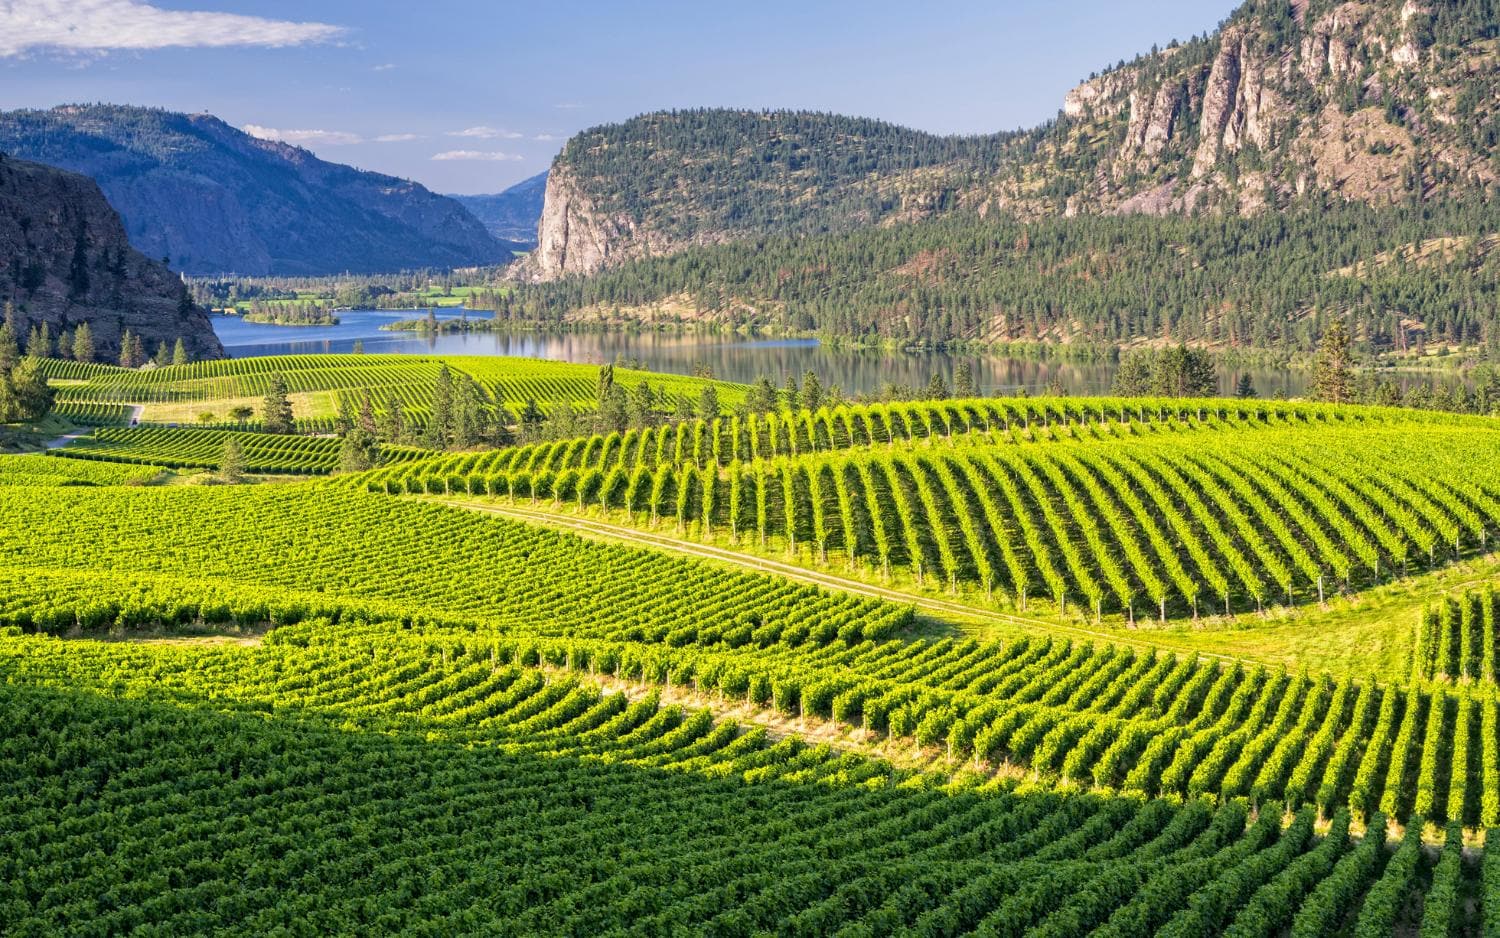 Okanagan Valley wine region is among Canada's best